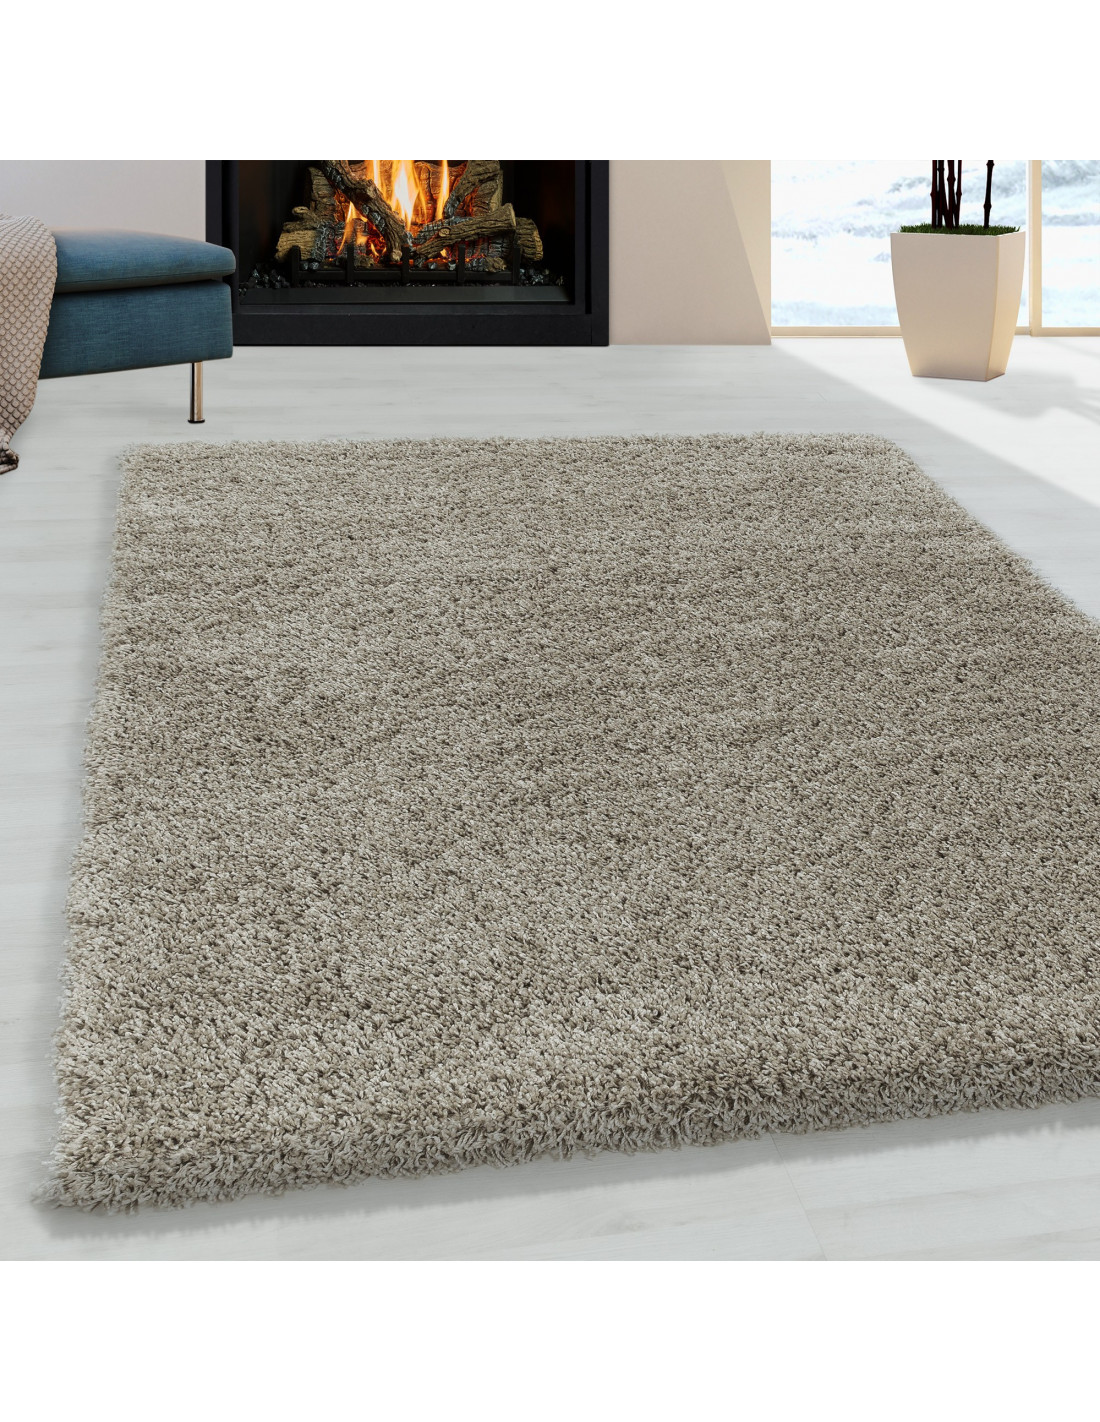  Alfombra de pelo largo suave y cálida, alfombra grande para  sala de estar, fácil de cuidar, alfombra de teñido anudado-C_120 x 200,  suave, no se desprende, gruesa, fácil de limpiar, alfombras